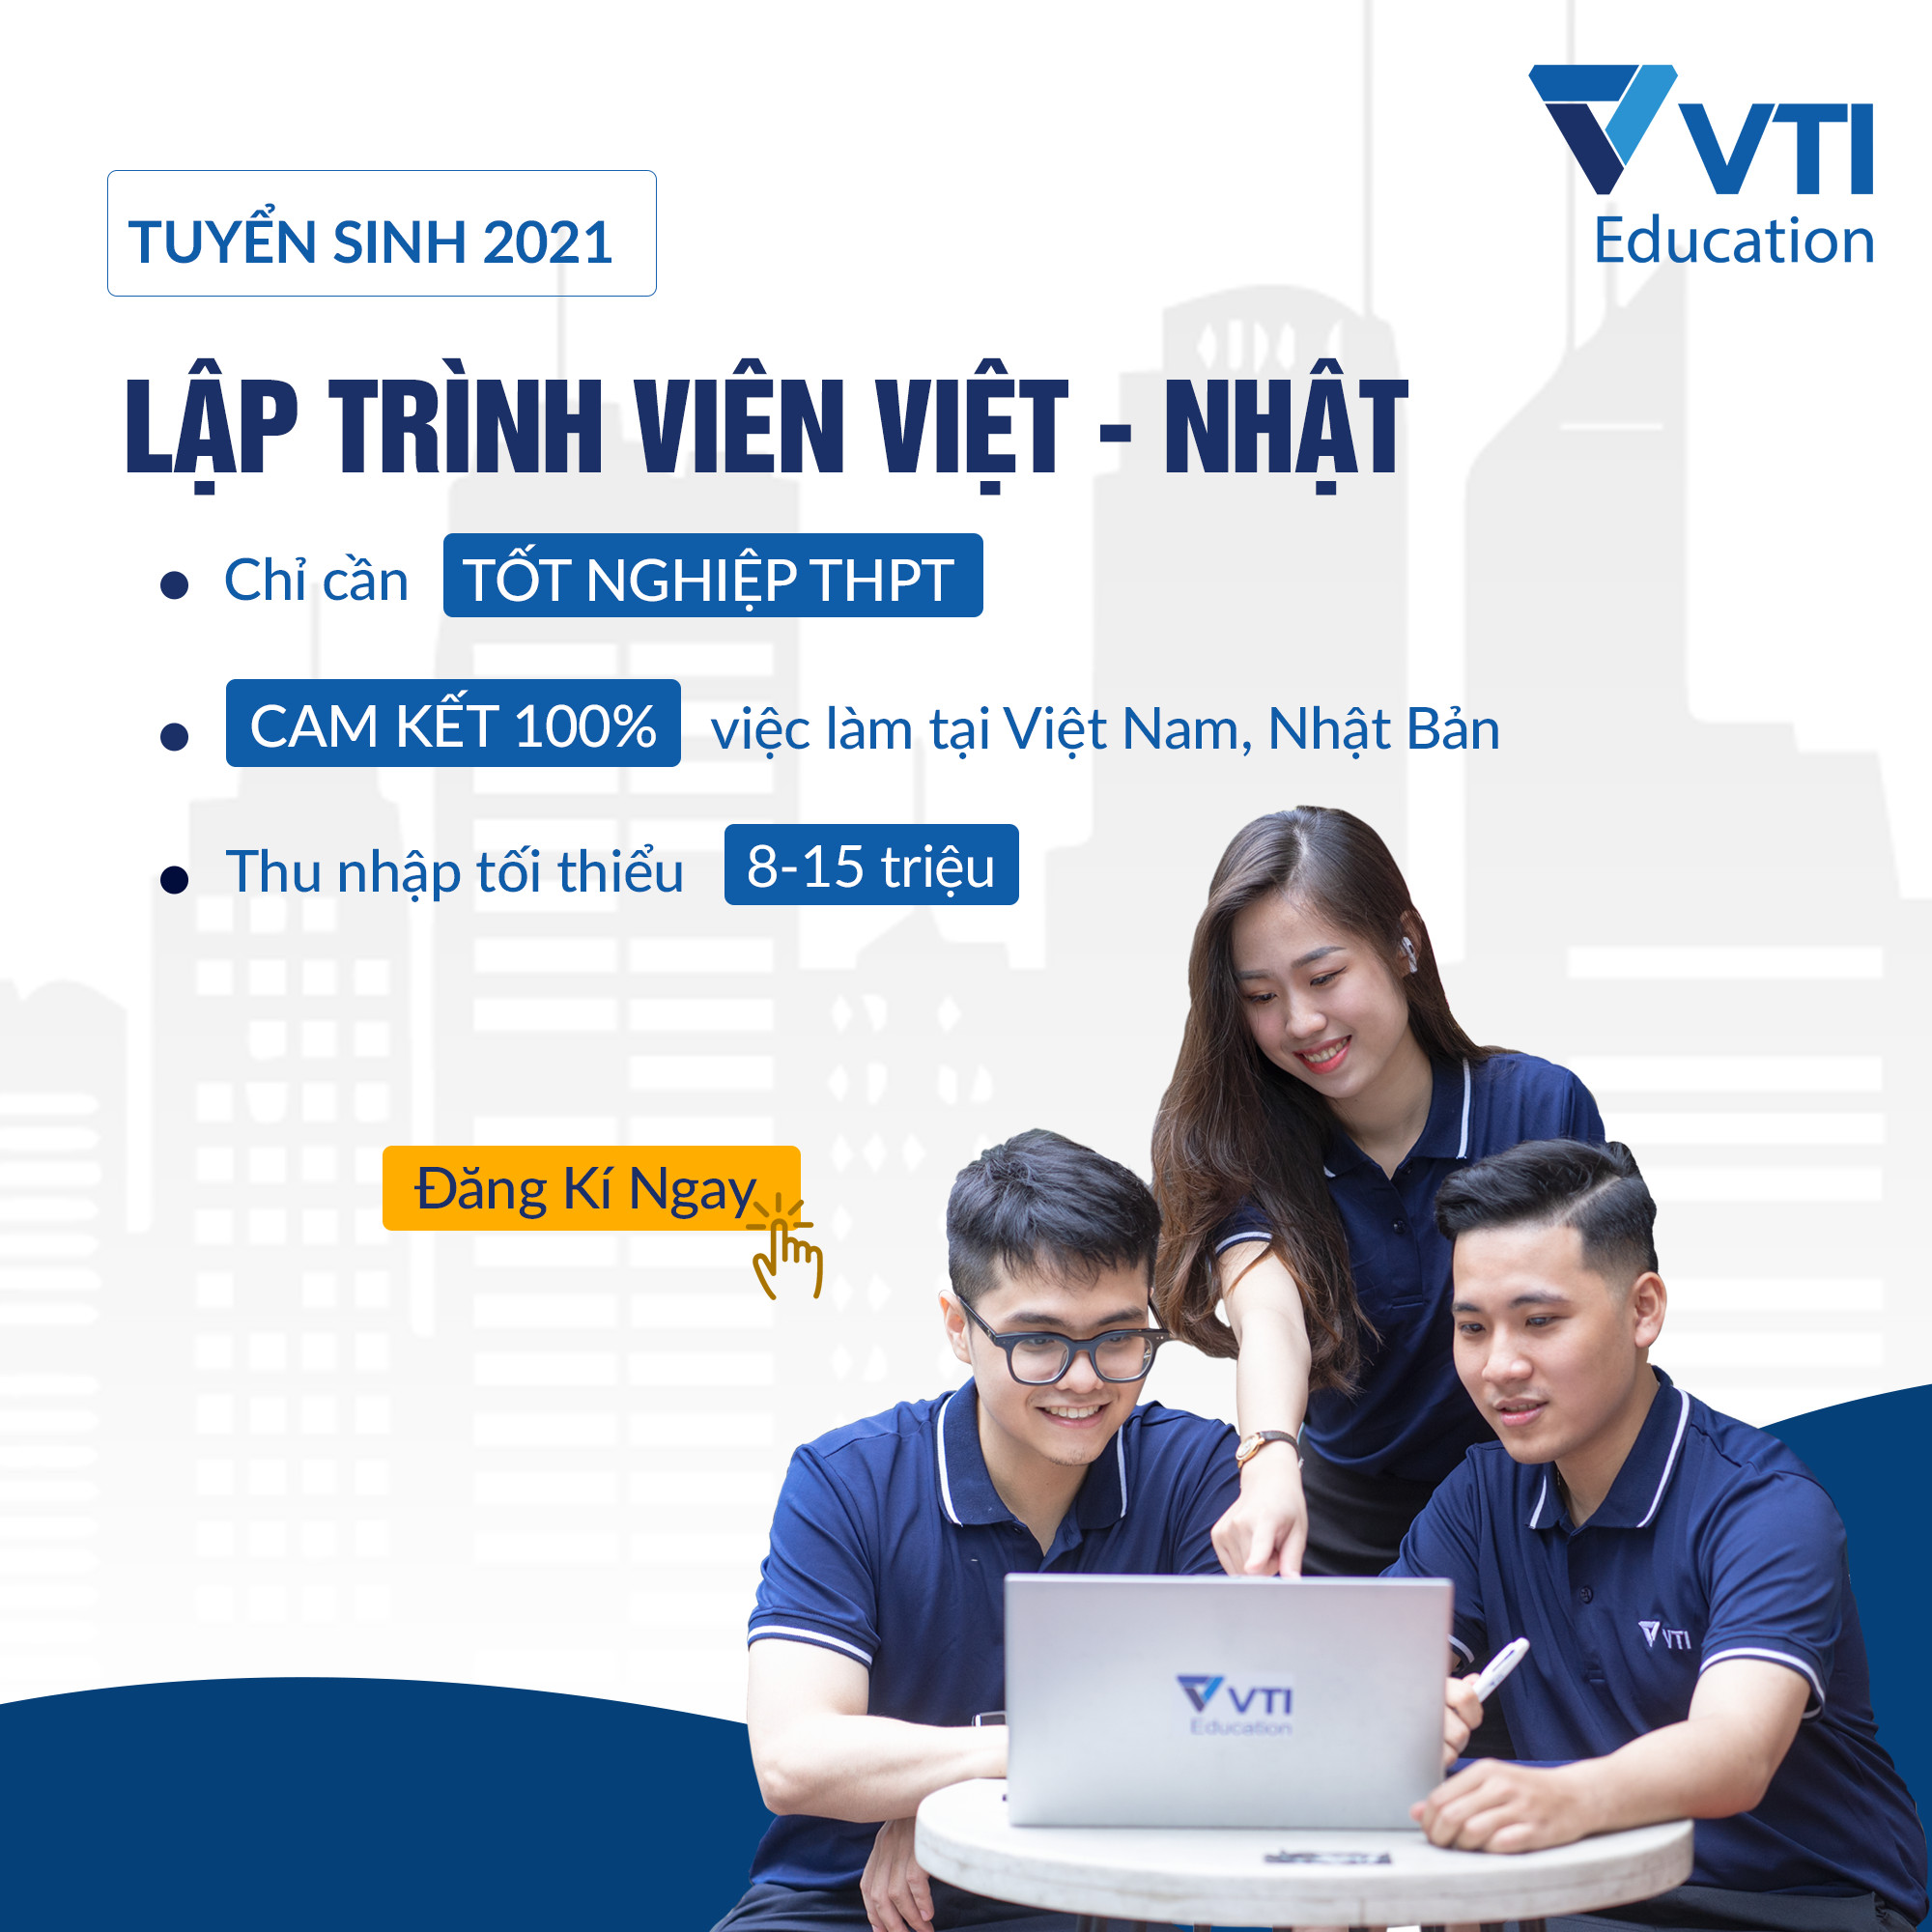 VTI Education - Chương trình học ngành Công nghệ thông tin theo thực tế doanh nghiệp